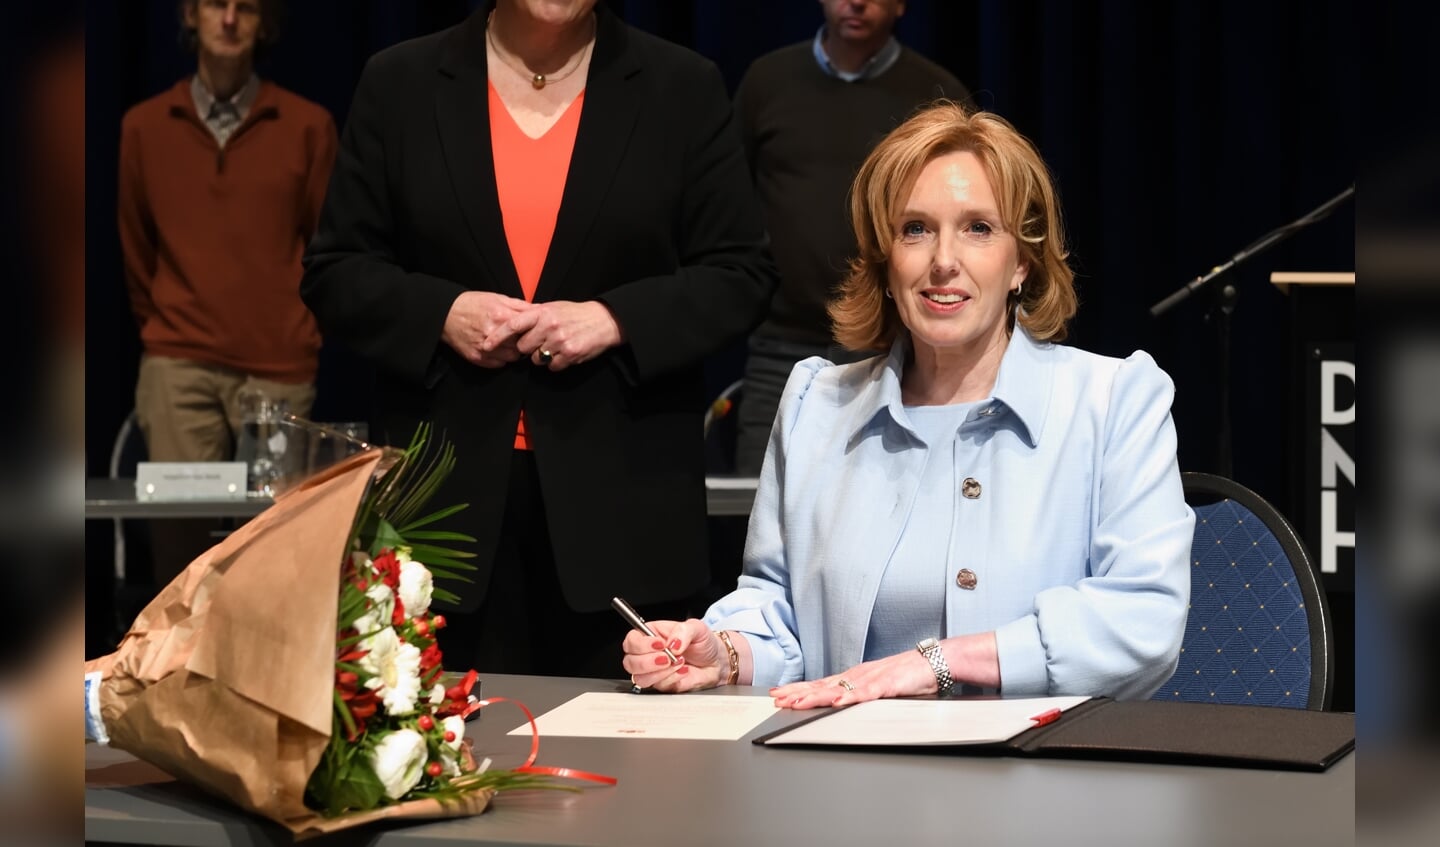 Dinsdagavond werd Suzanne Otters-Bruijnen (51) als nieuwe burgemeester van Son en Breugel, beëdigd